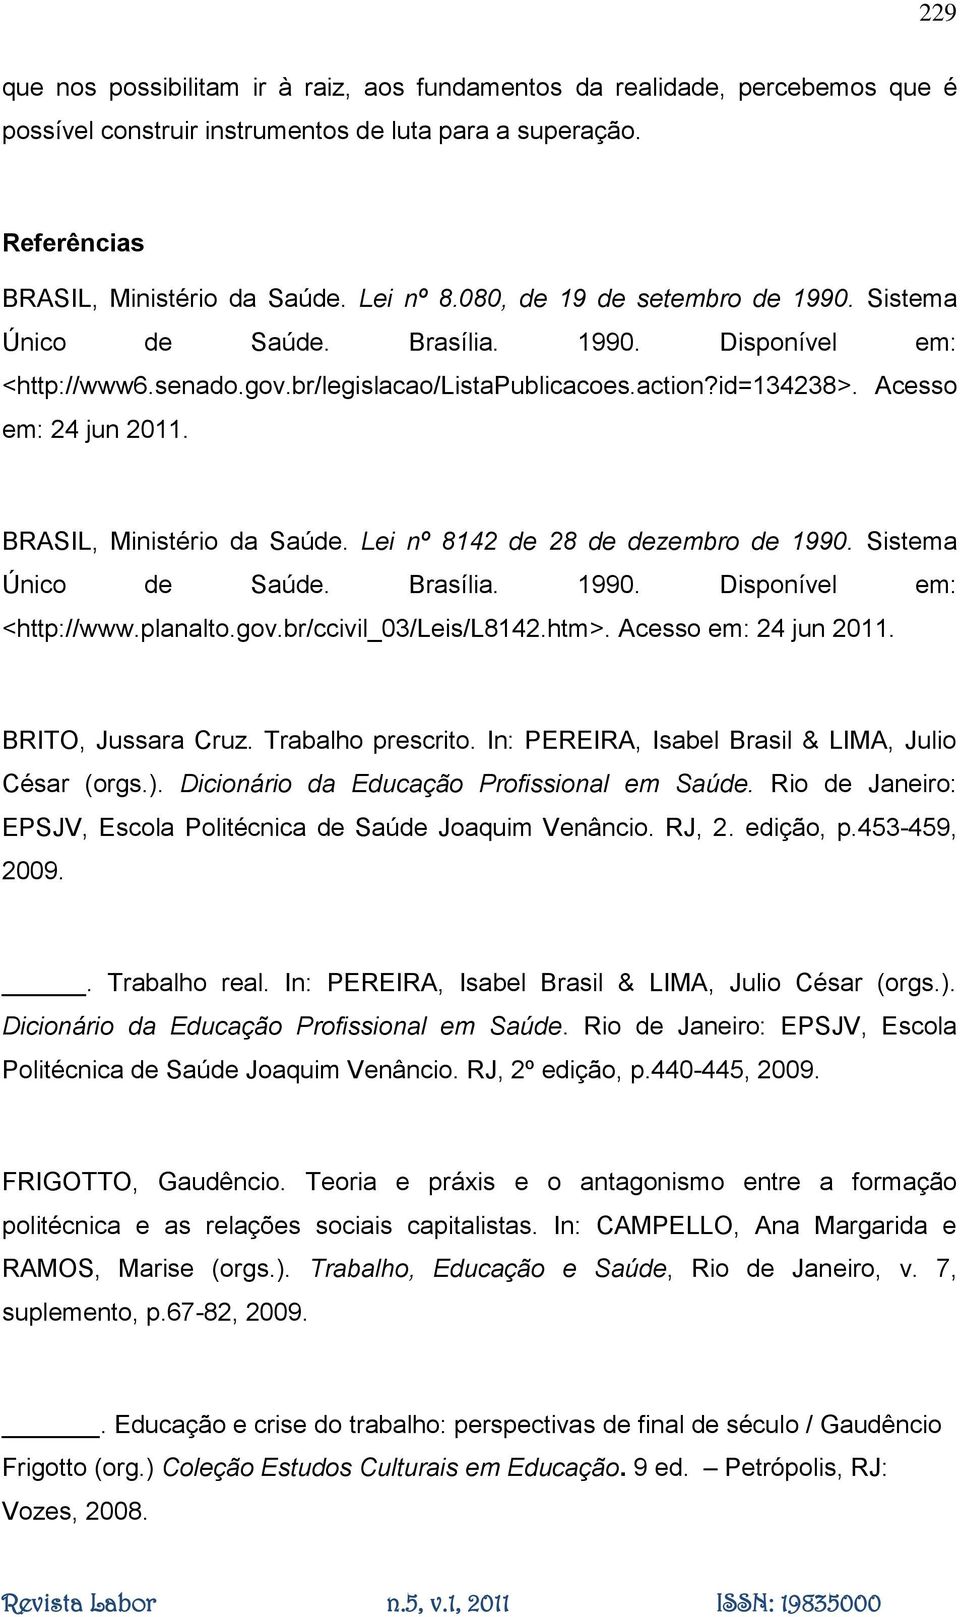 BRASIL, Ministério da Saúde. Lei nº 8142 de 28 de dezembro de 1990. Sistema Único de Saúde. Brasília. 1990. Disponível em: <http://www.planalto.gov.br/ccivil_03/leis/l8142.htm>.